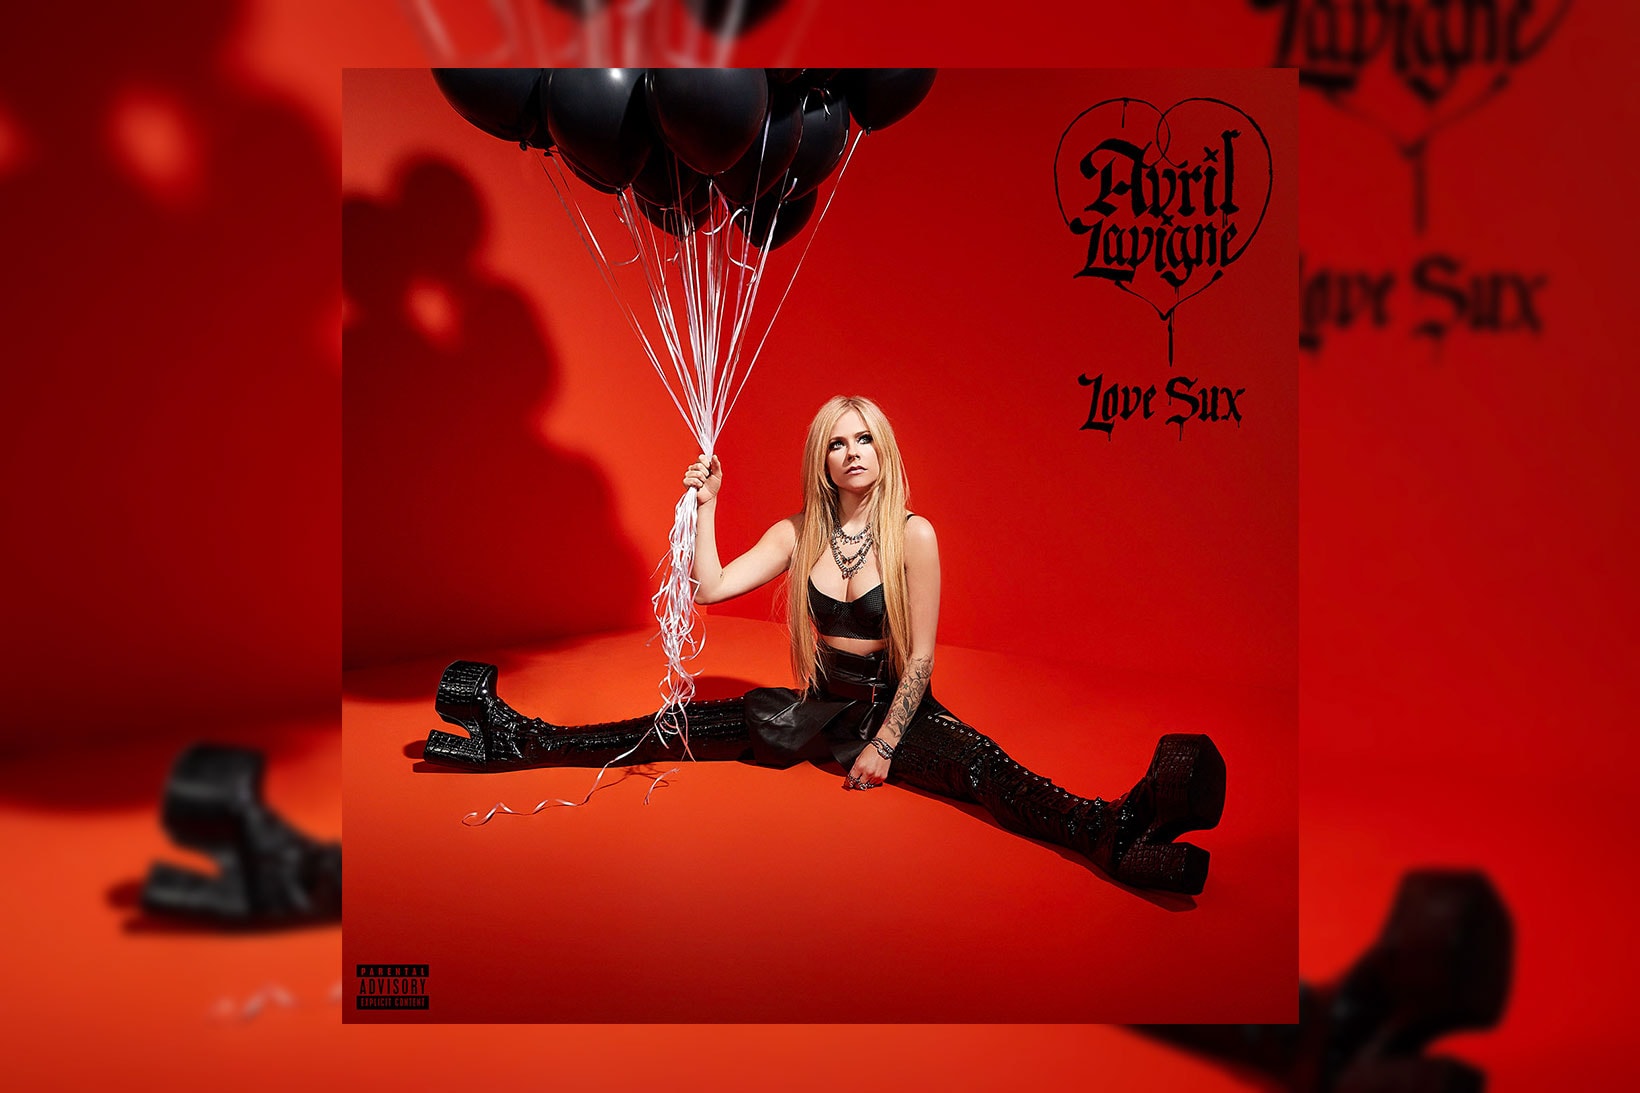 Avril Lavigne Album Love Sux Artist Singer Musician 